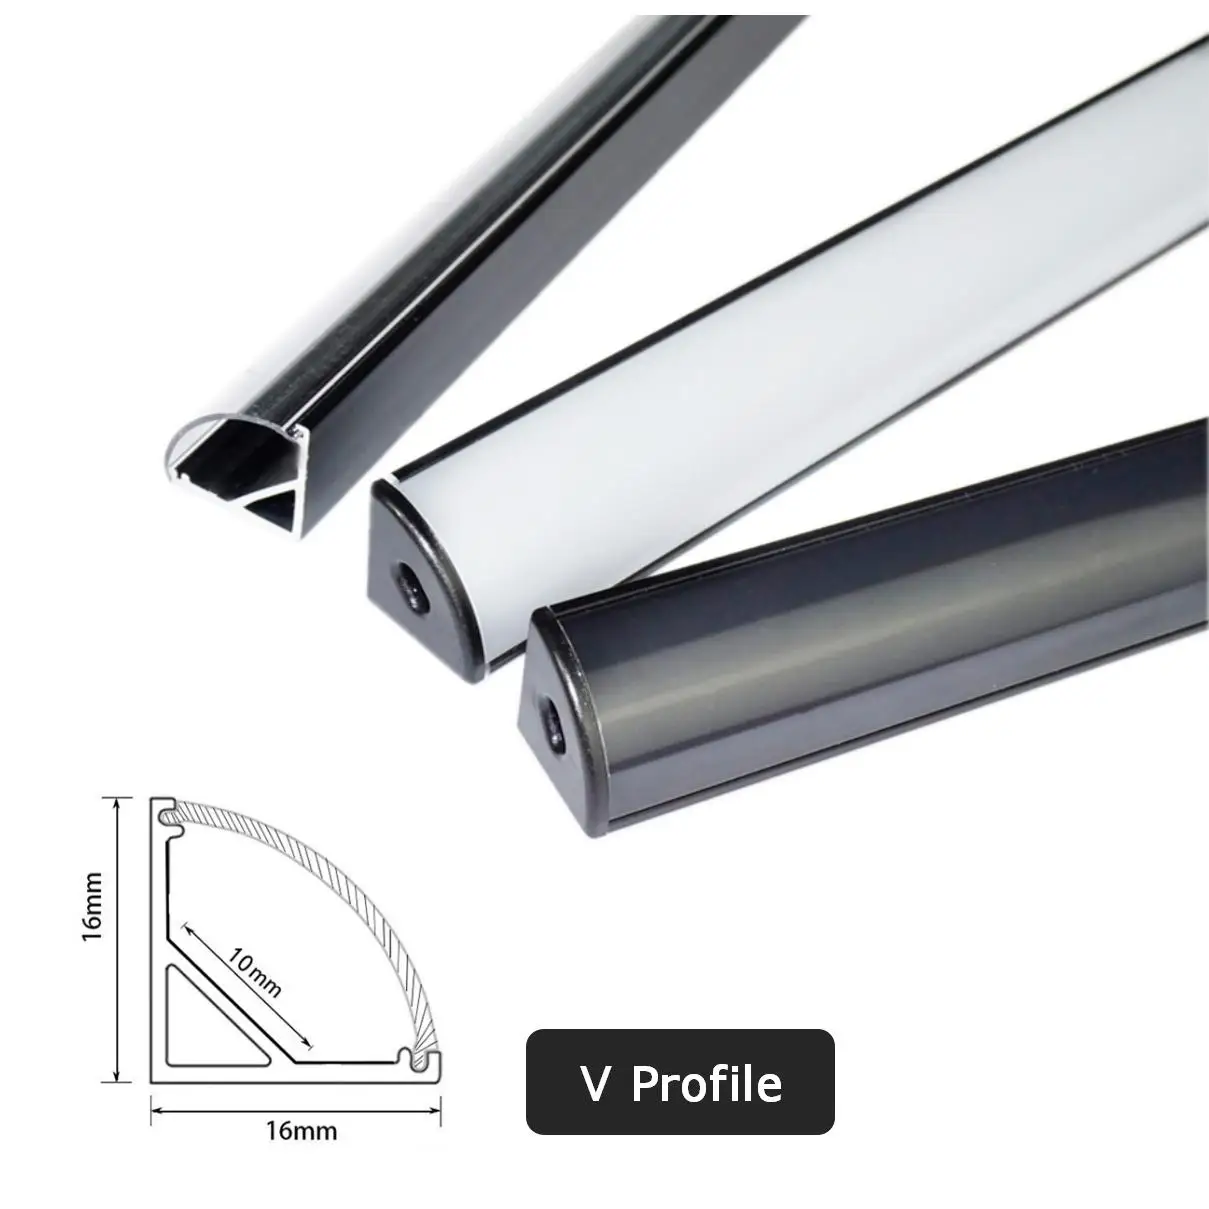 Black V U YW LED Aluminum Profile 50cm For 5050 5630 Corner Channel Case Holder Milky Cover Cabinet Closet LED Bar Strip Lights images - 6